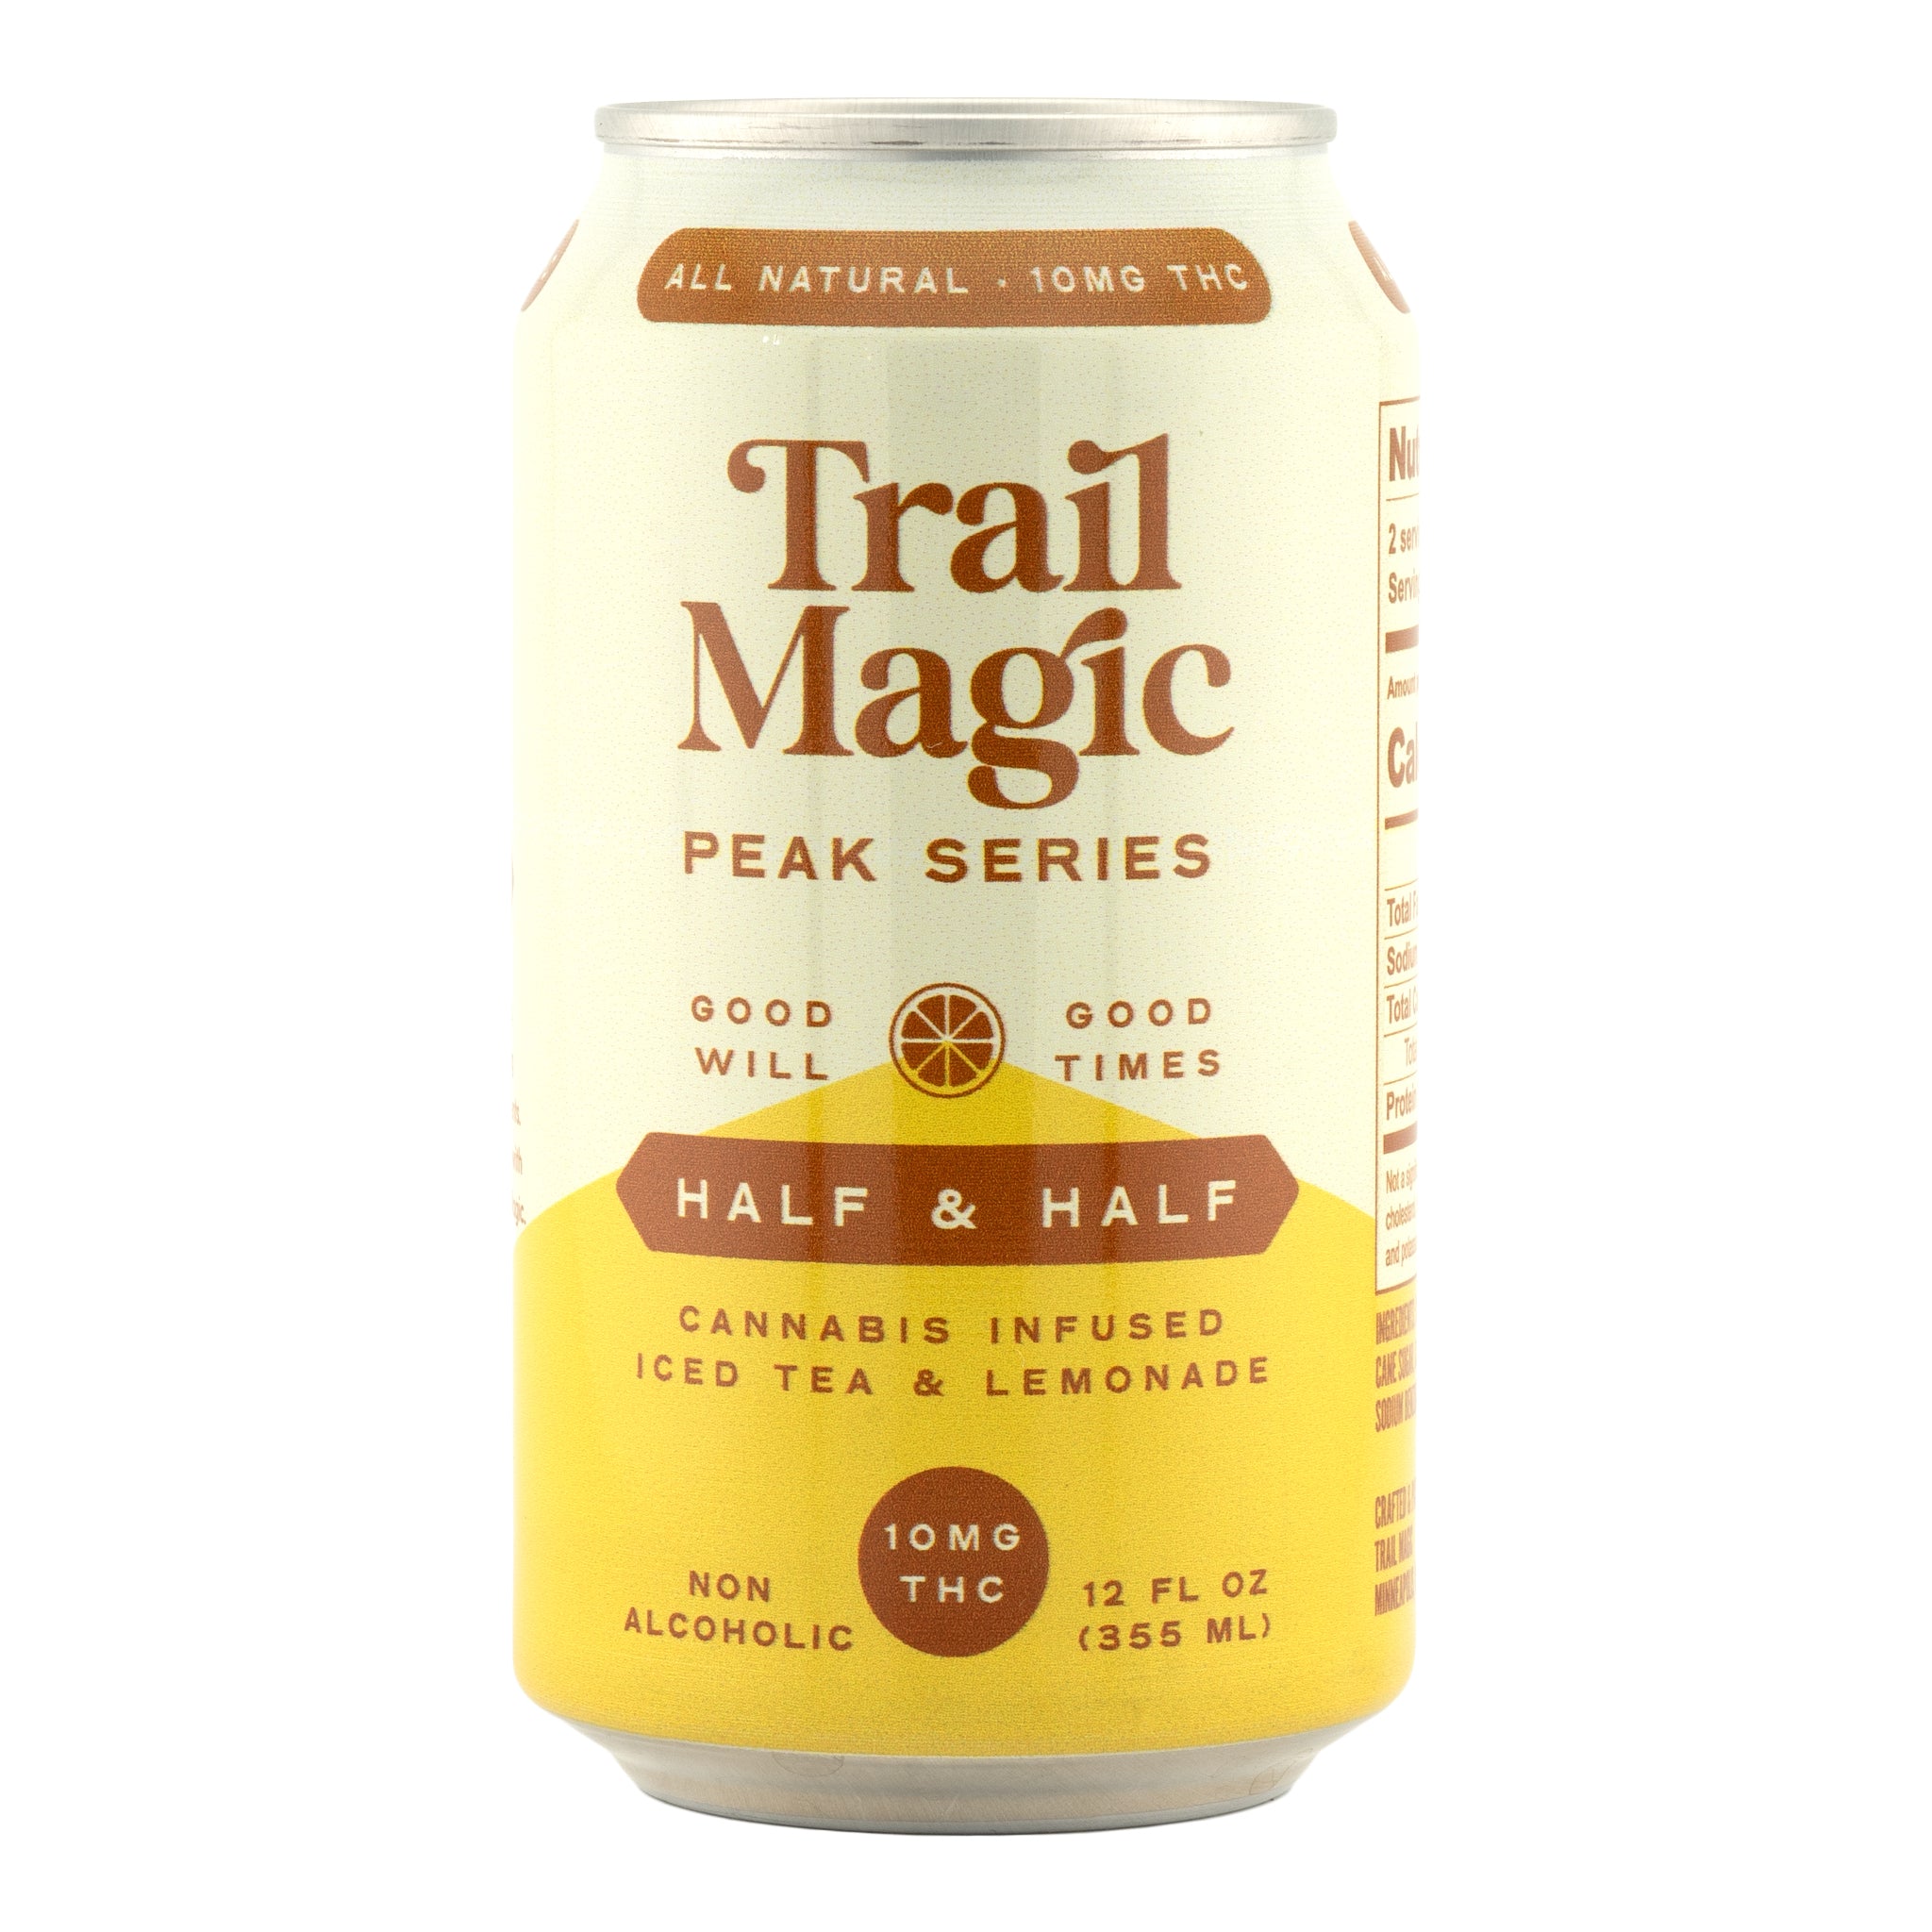 TRAIL MAGIC Half & Half Peak Series 10 mg THC